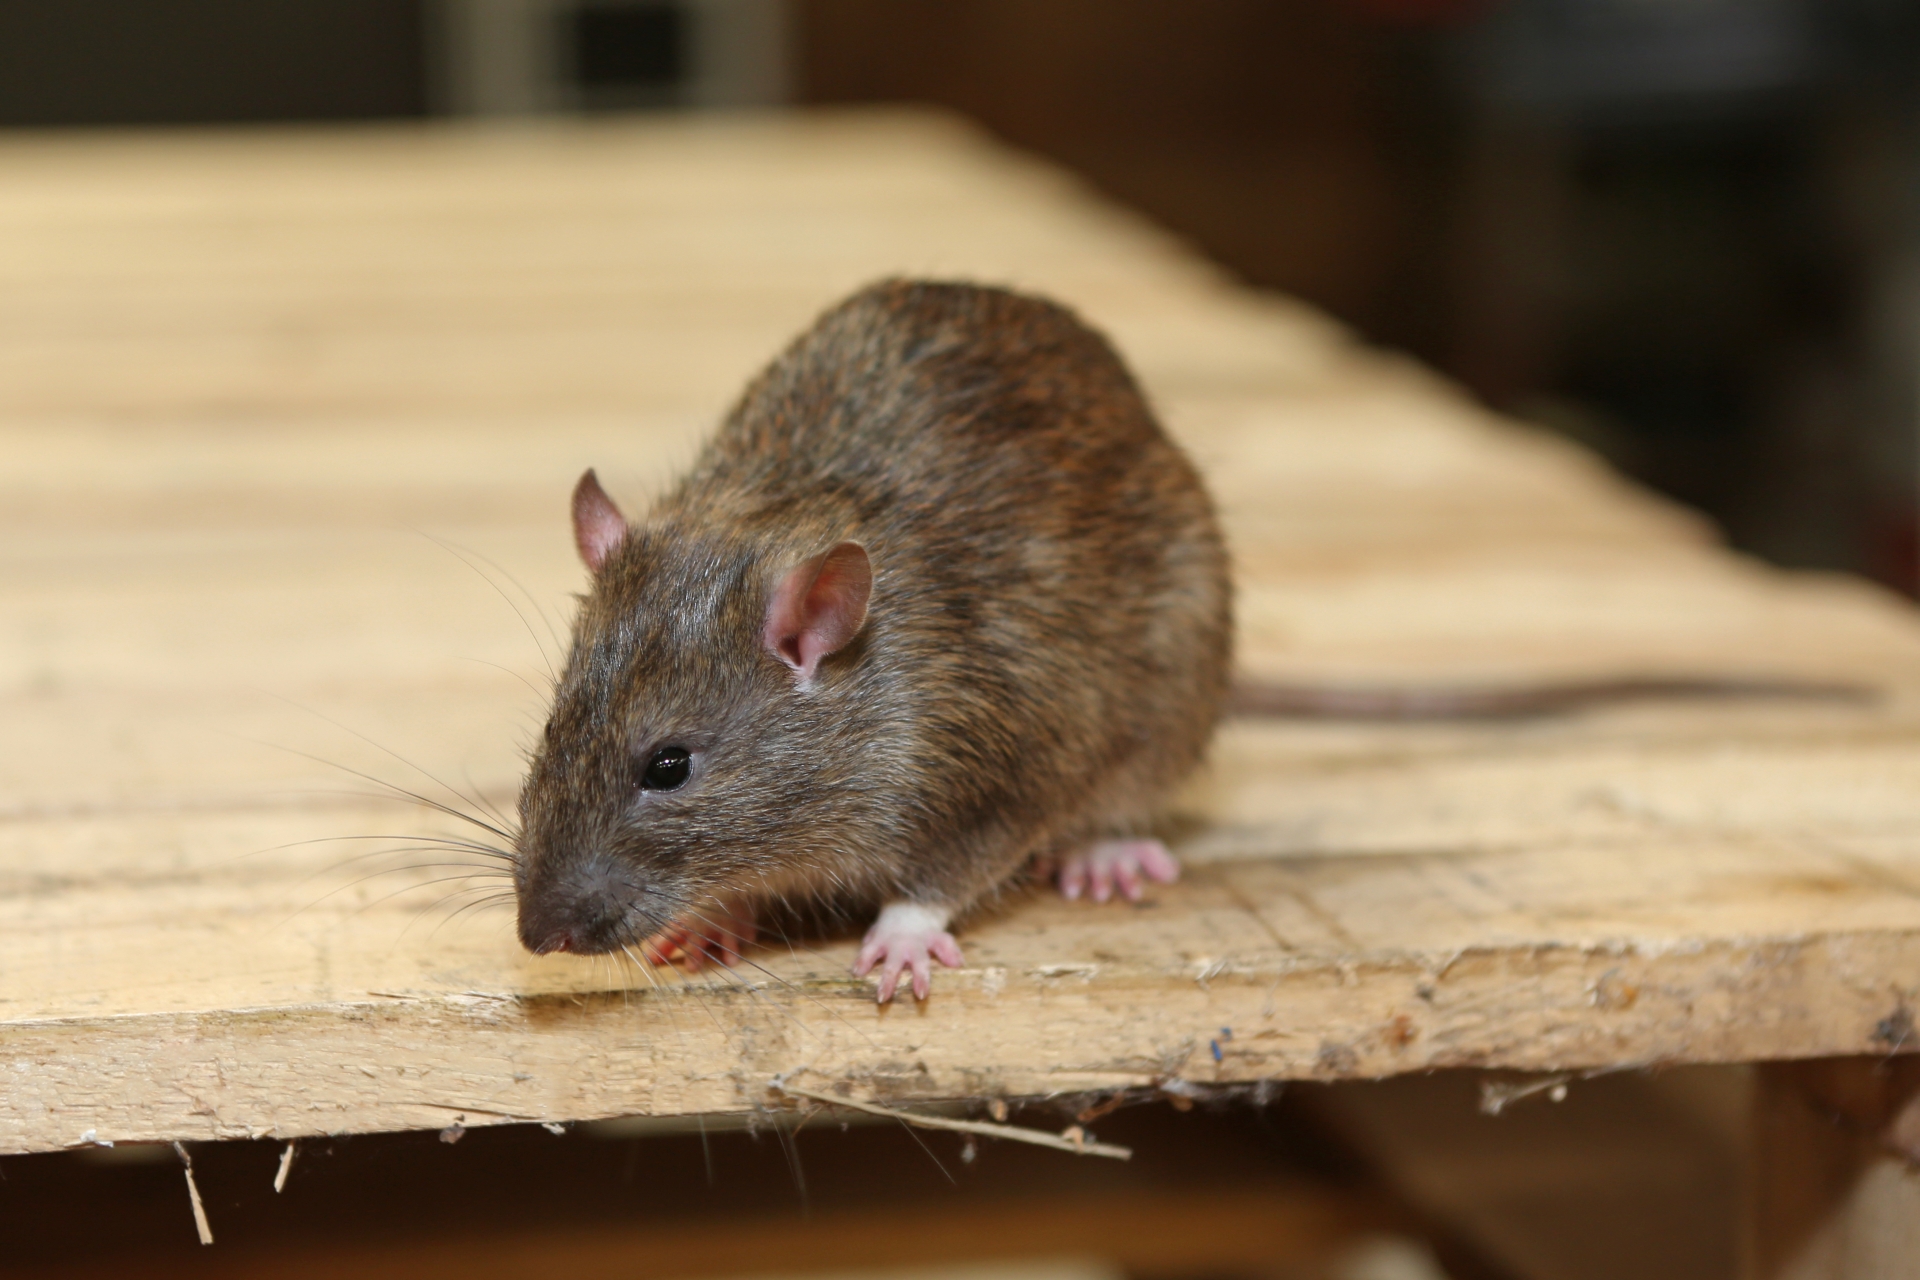 Rat extermination, Pest Control in Pimlico, SW1. Call Now 020 8166 9746